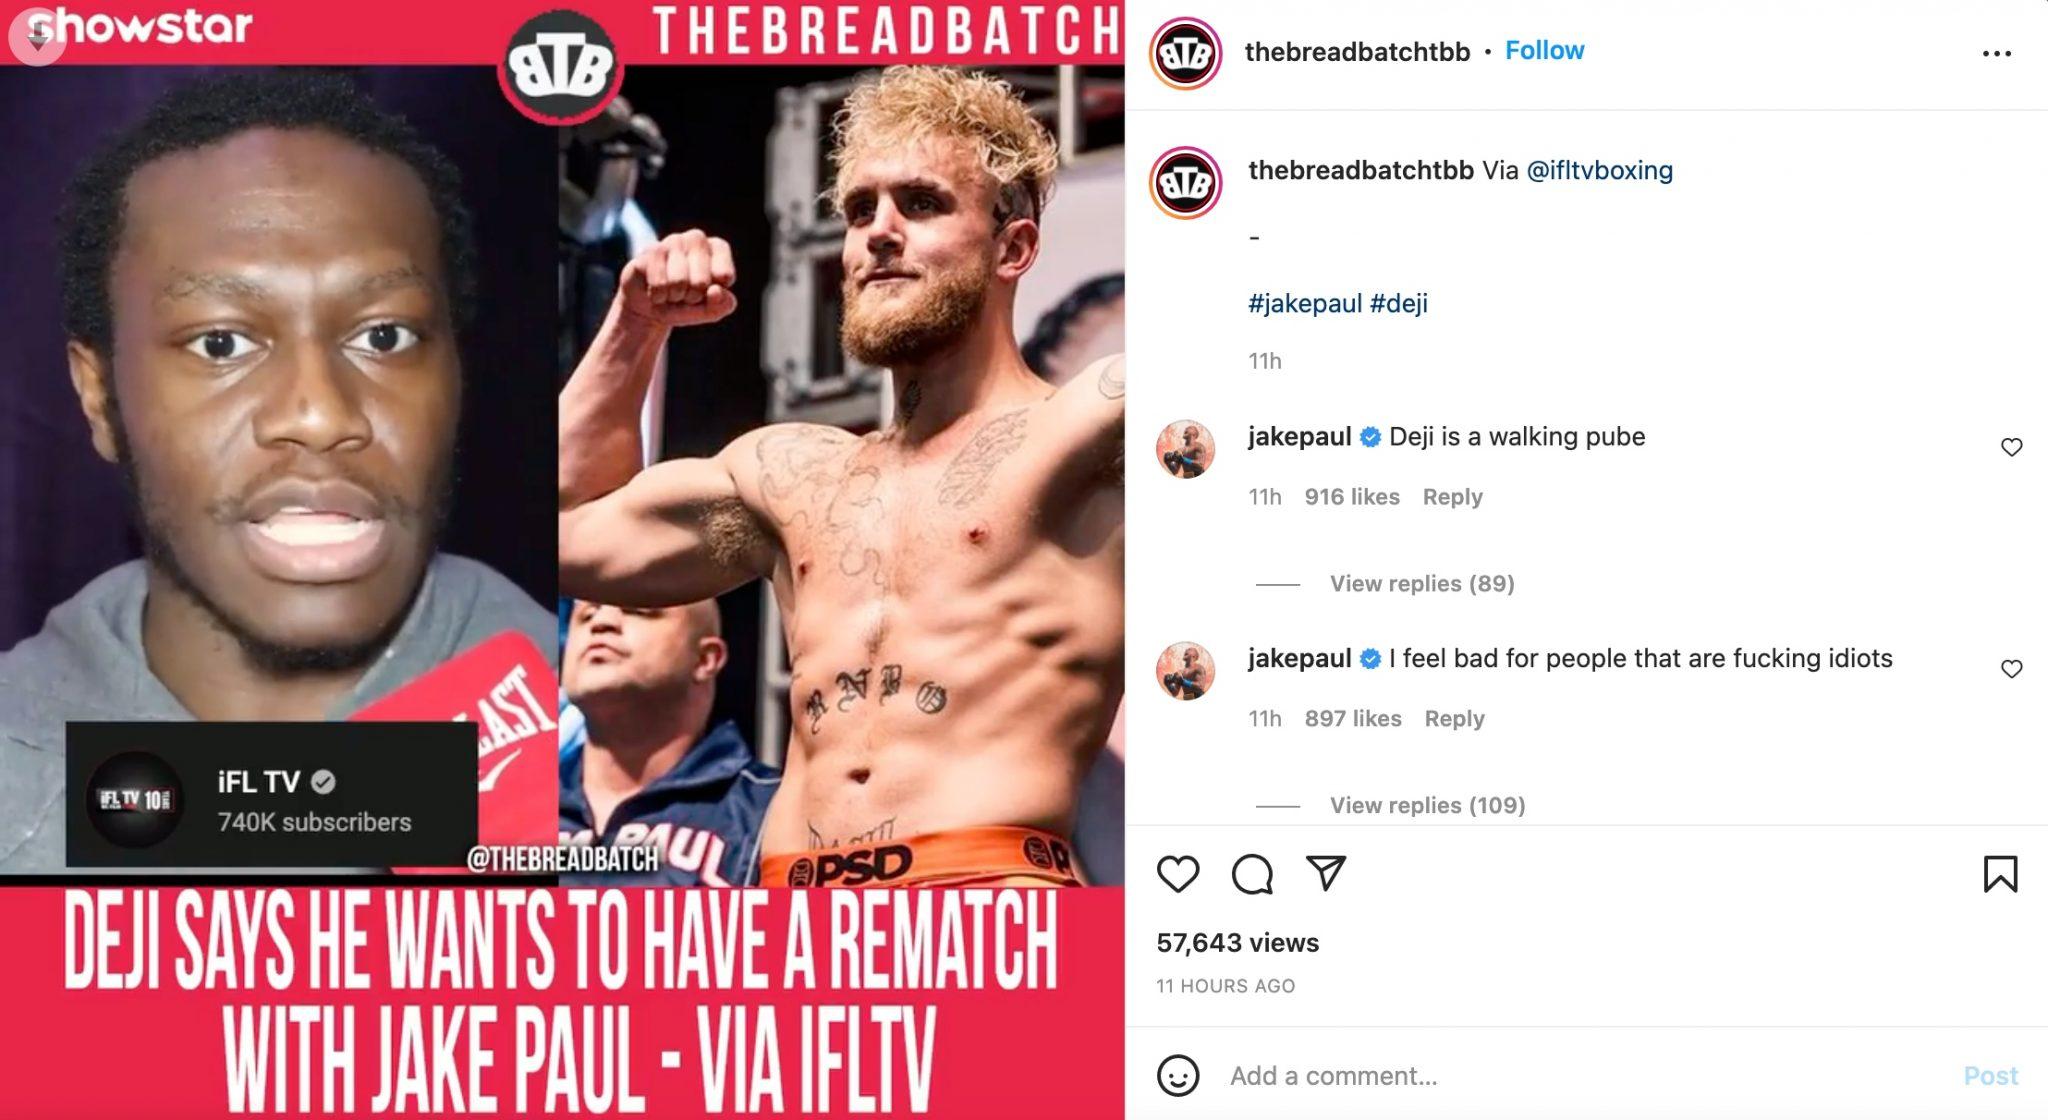 Jake Paul comments on Deji video on TheBreadBatch Instagram